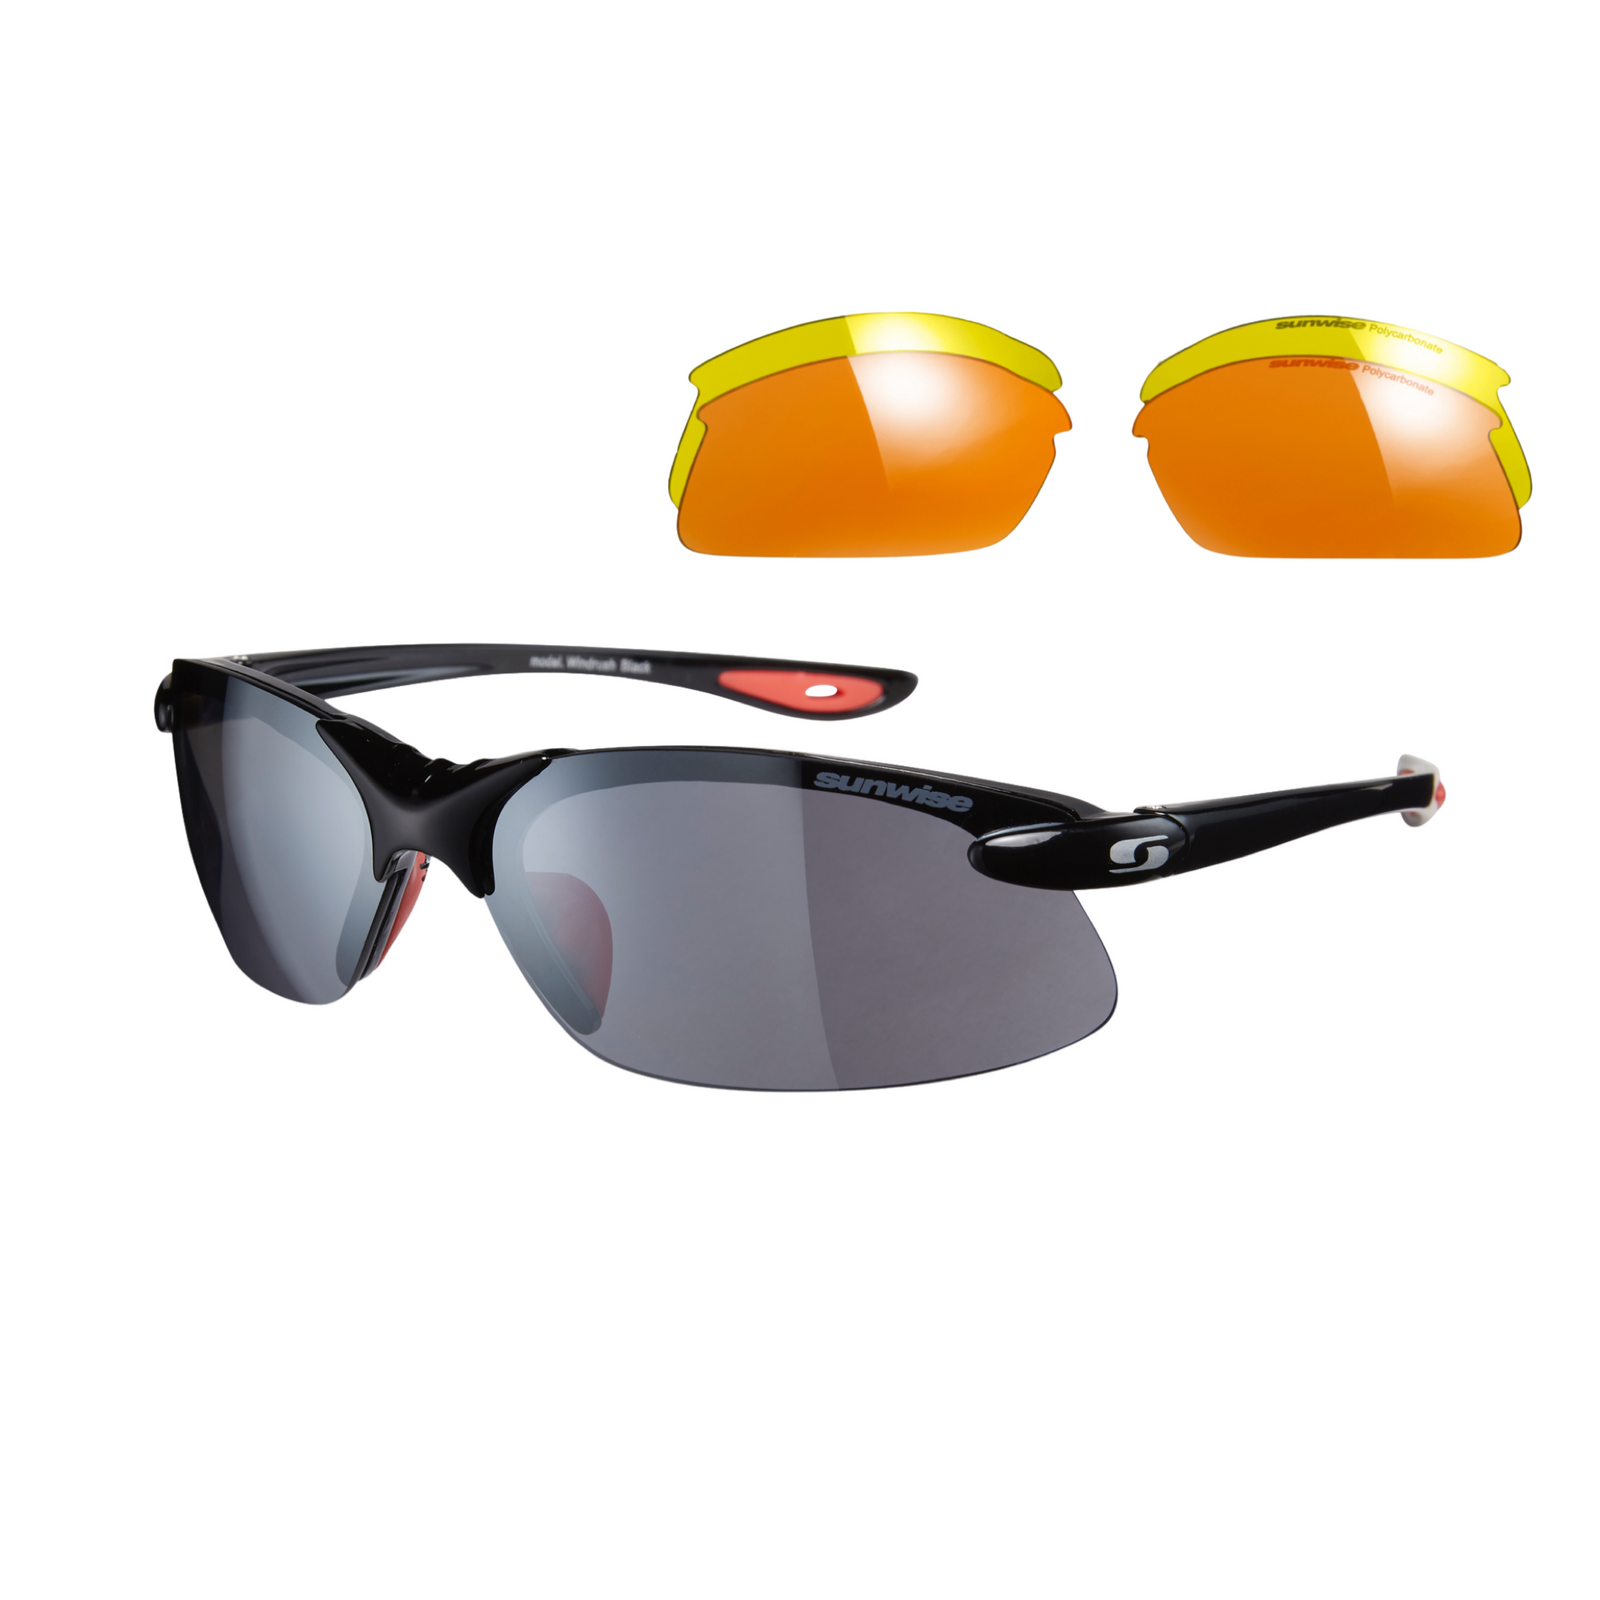 Shop Rowing Sunglasses - Anti Glare at Sunwise®